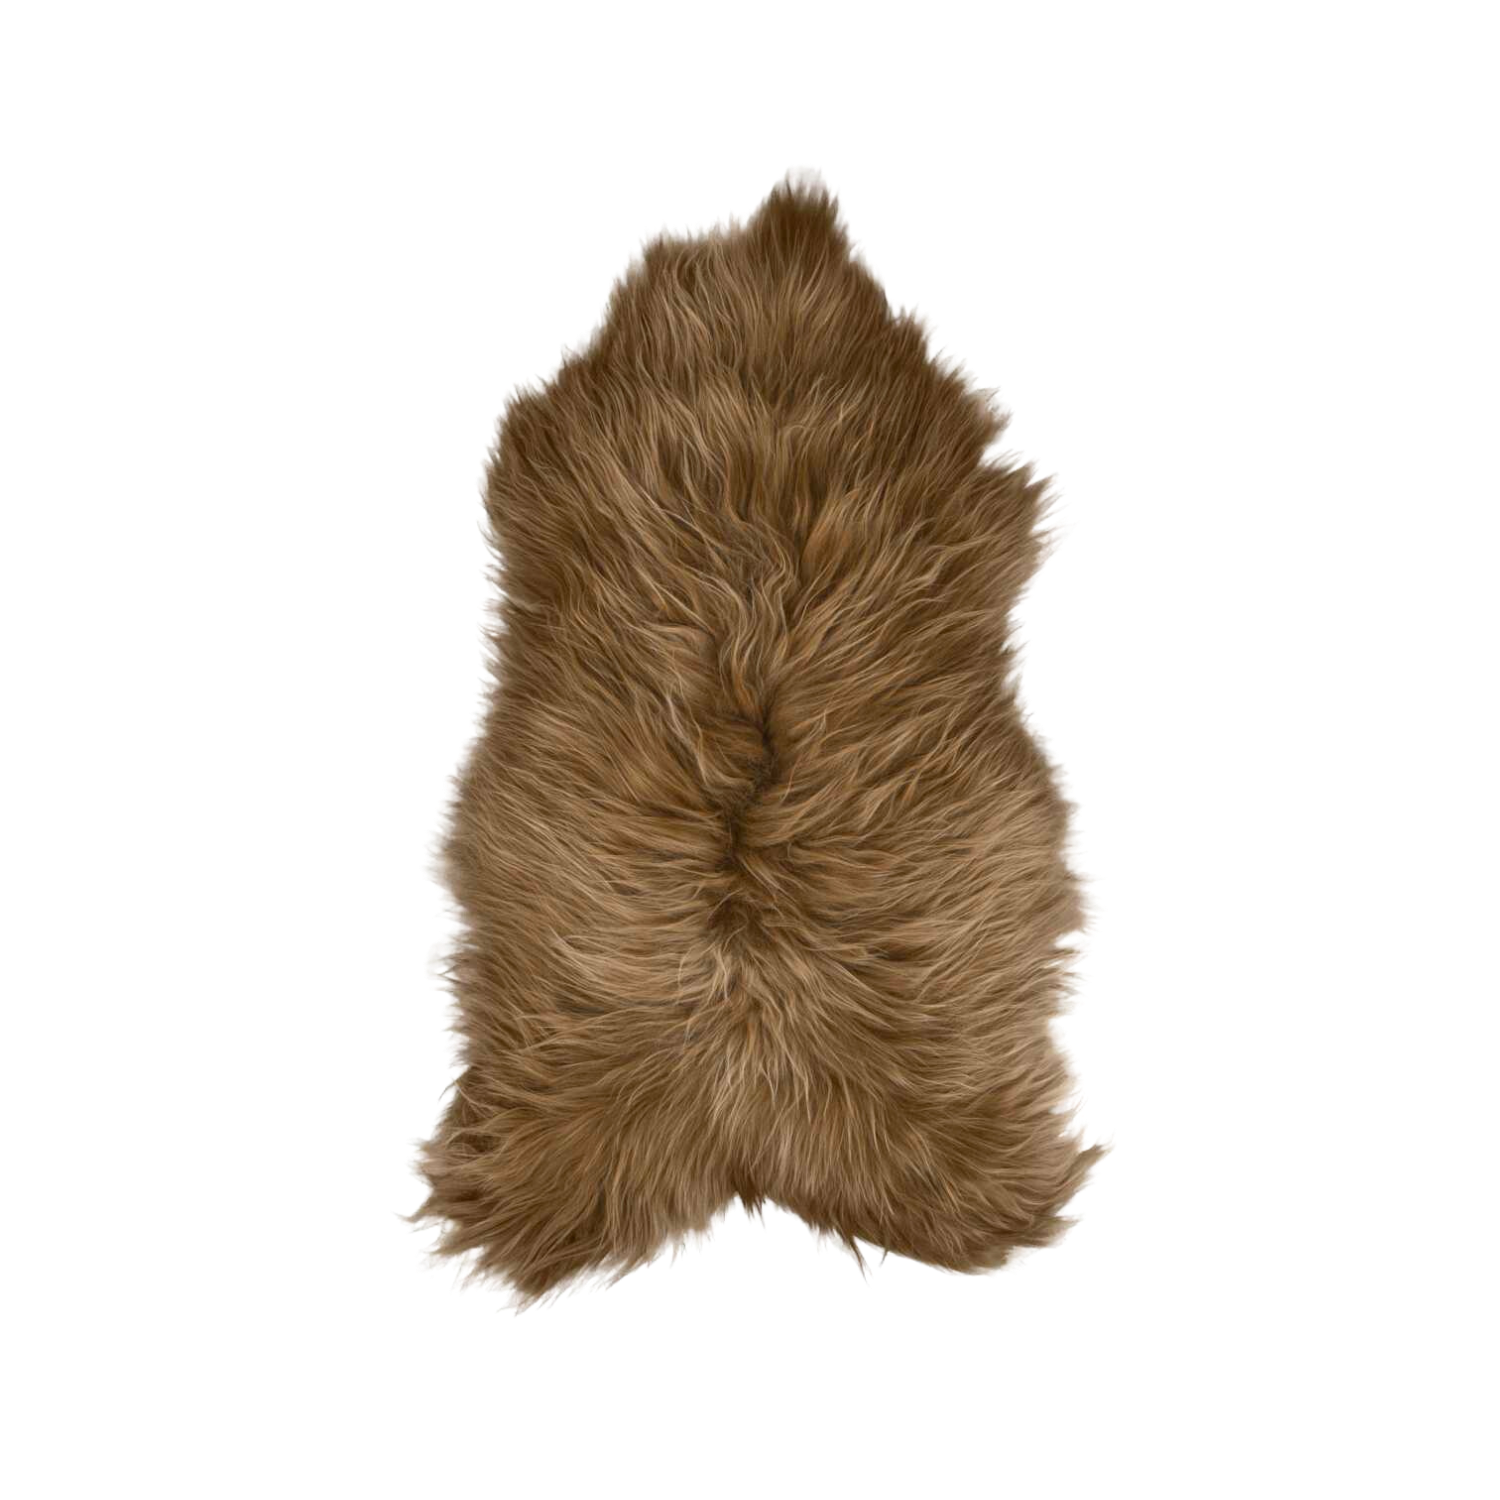 Icelandic Brown Long Hair Sheepskin